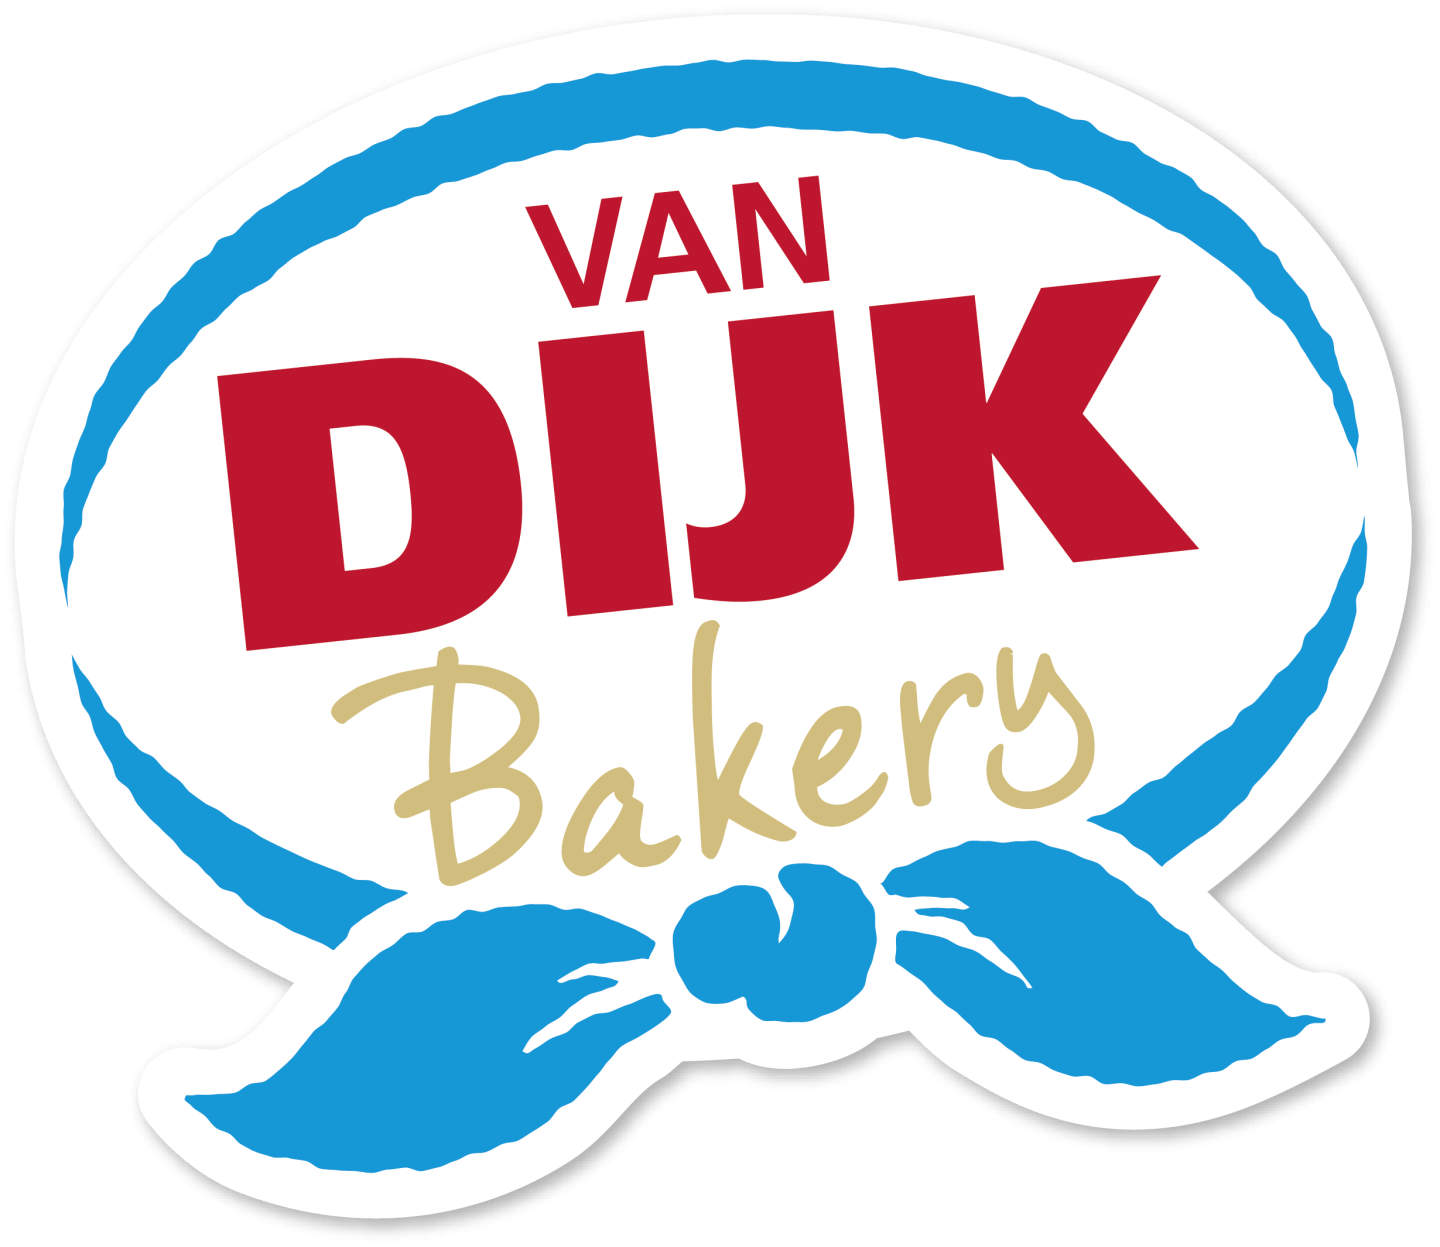 Van Dijk Bakery